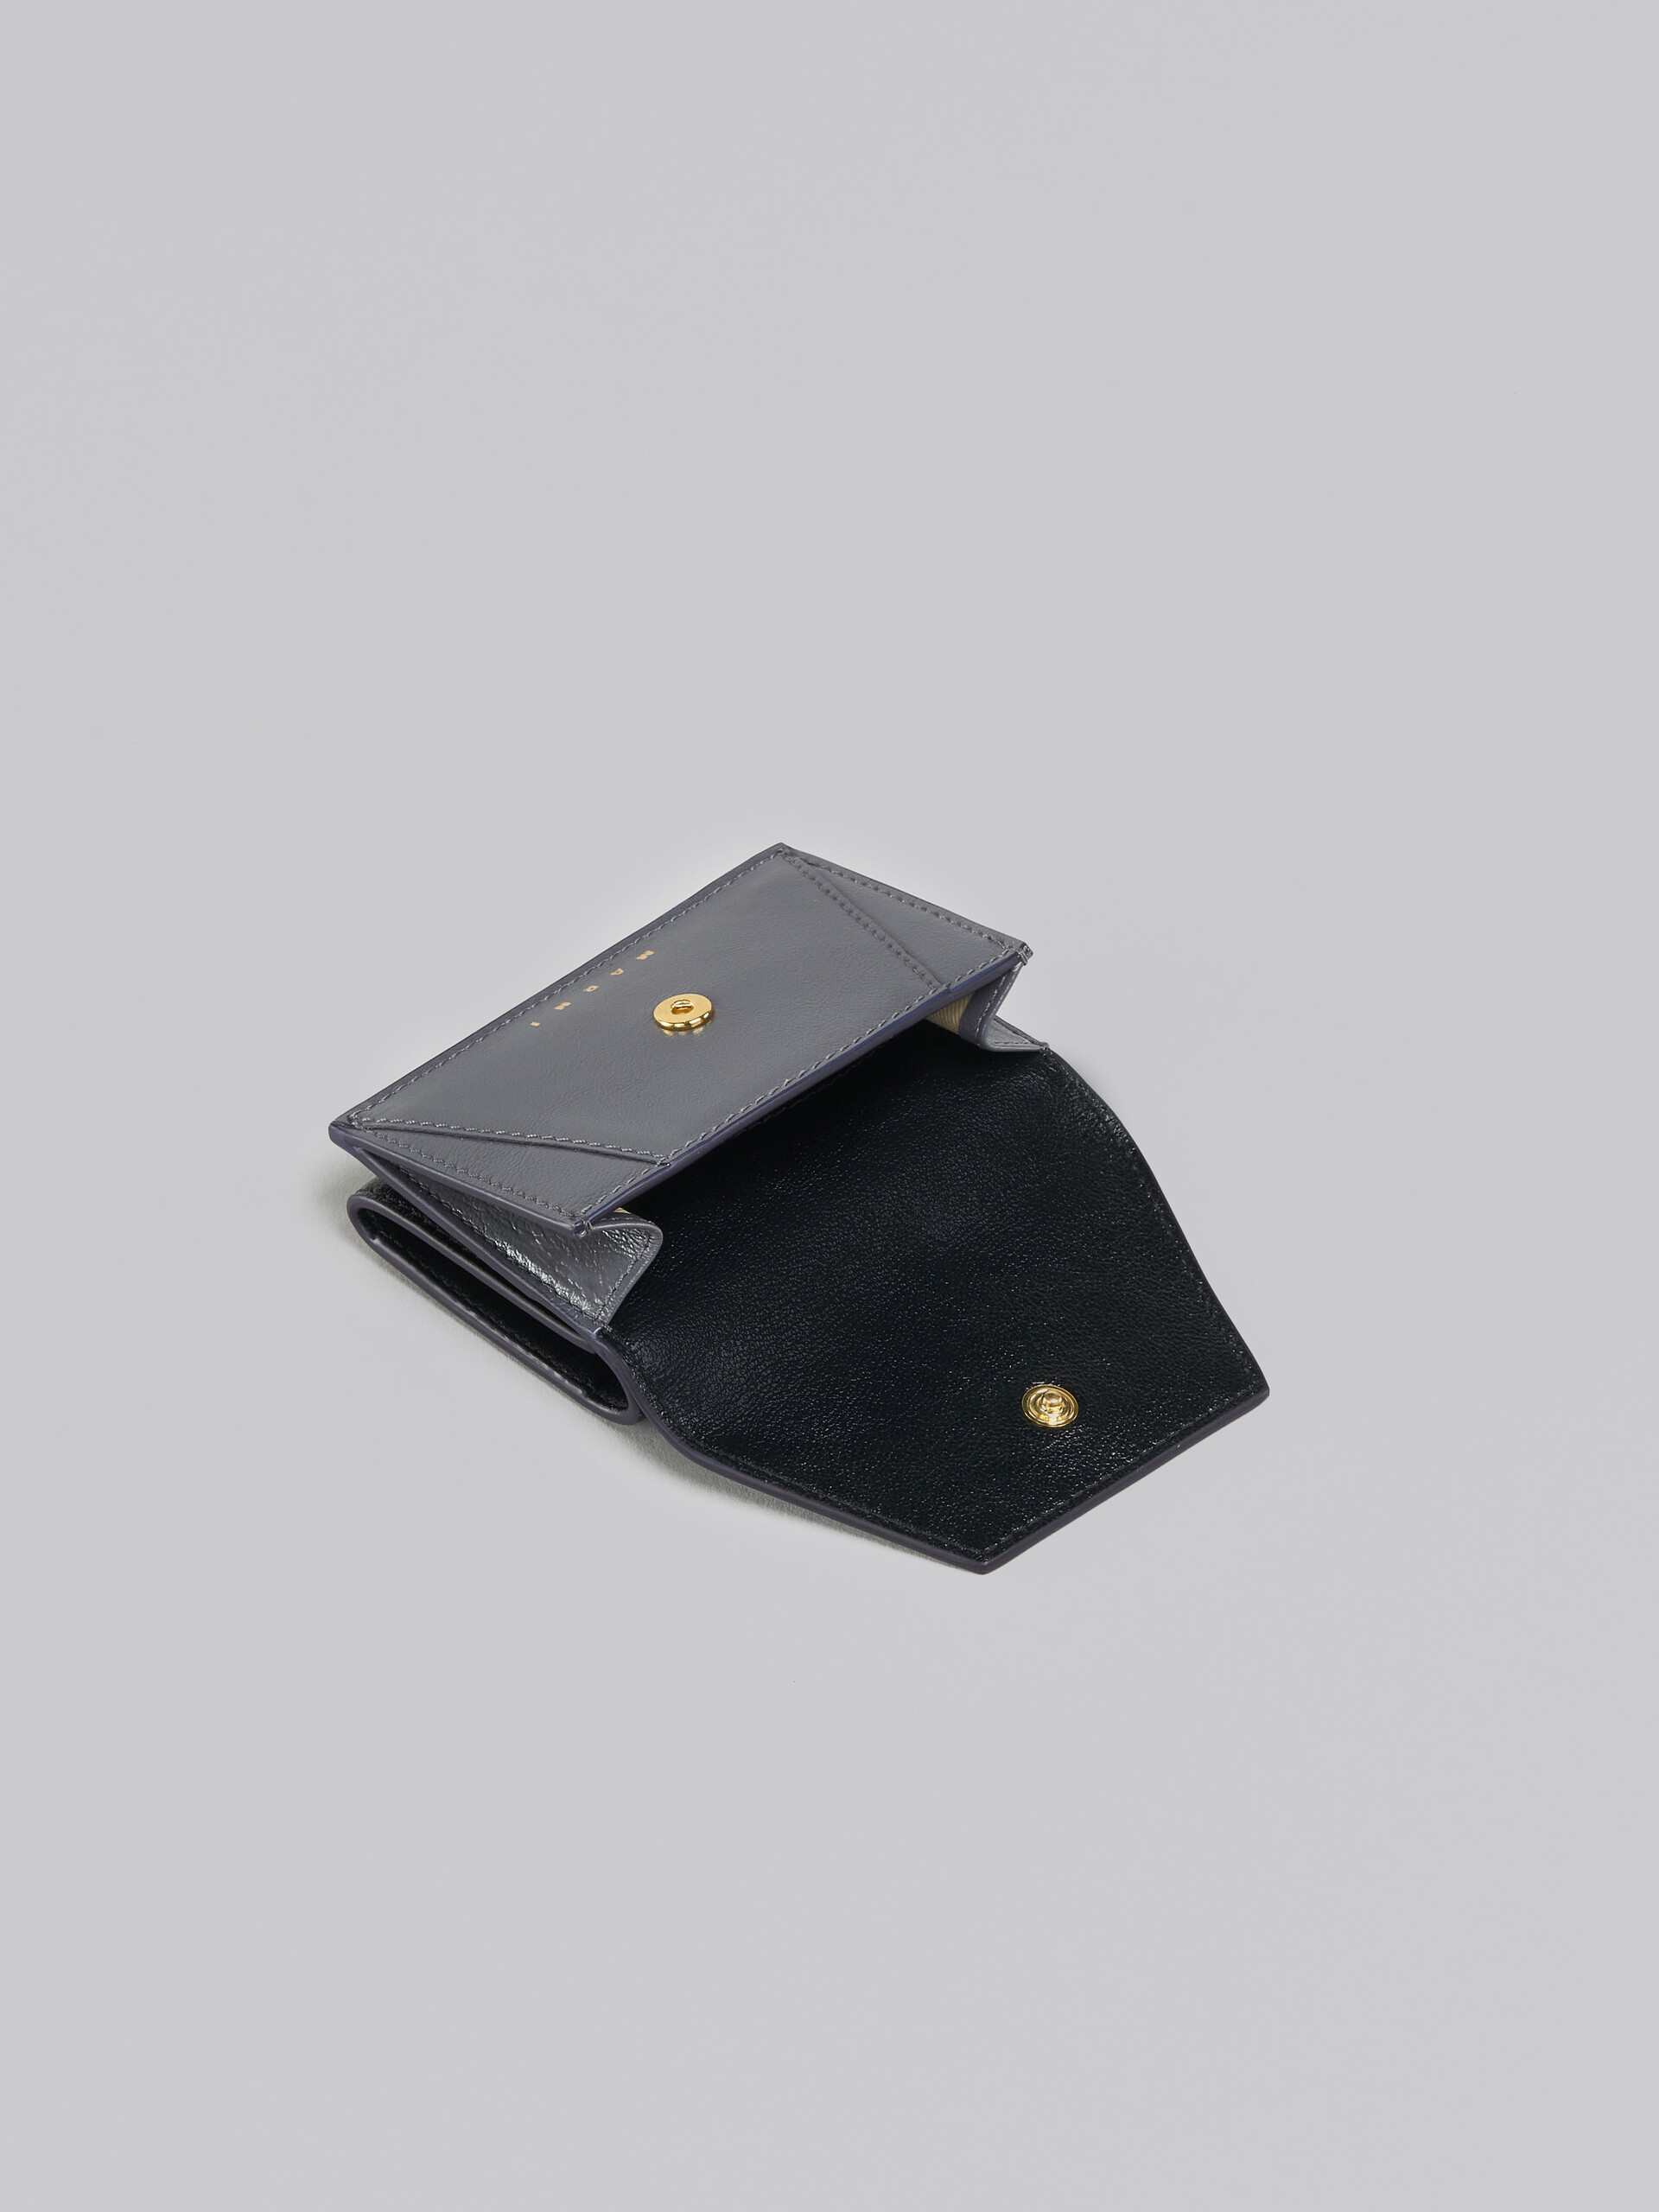 Portafoglio tri-fold in pelle grigia e nera - Portafogli - Image 5